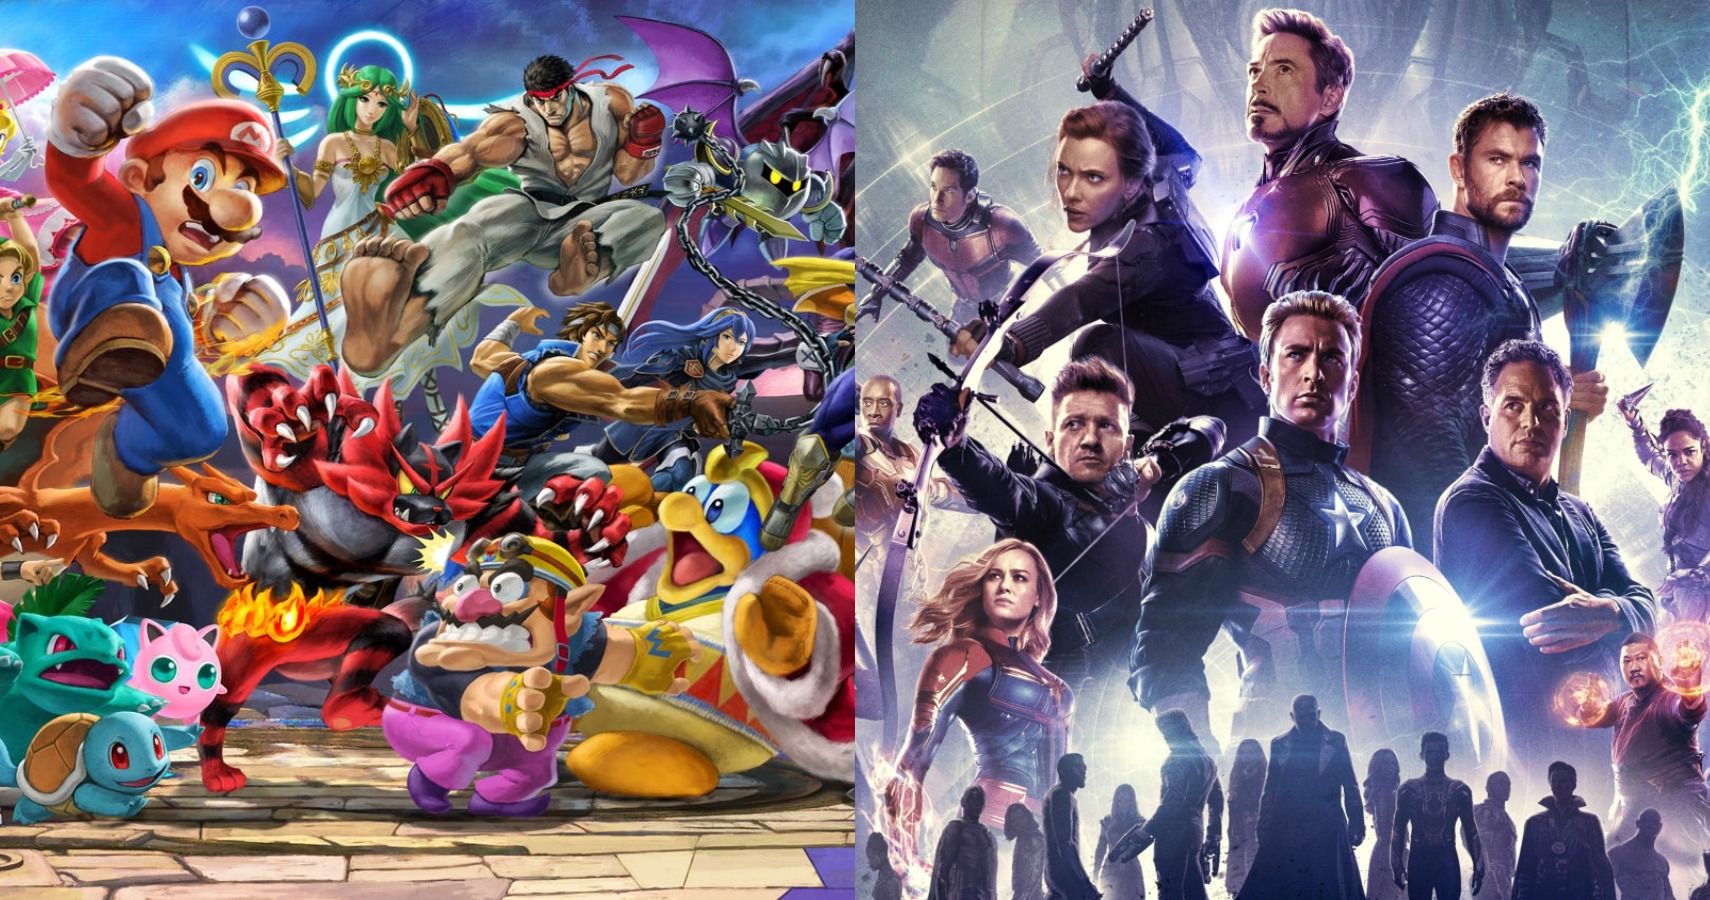 Super Smash Bros Ultimate Roster vs Avengers: Endgame roster.